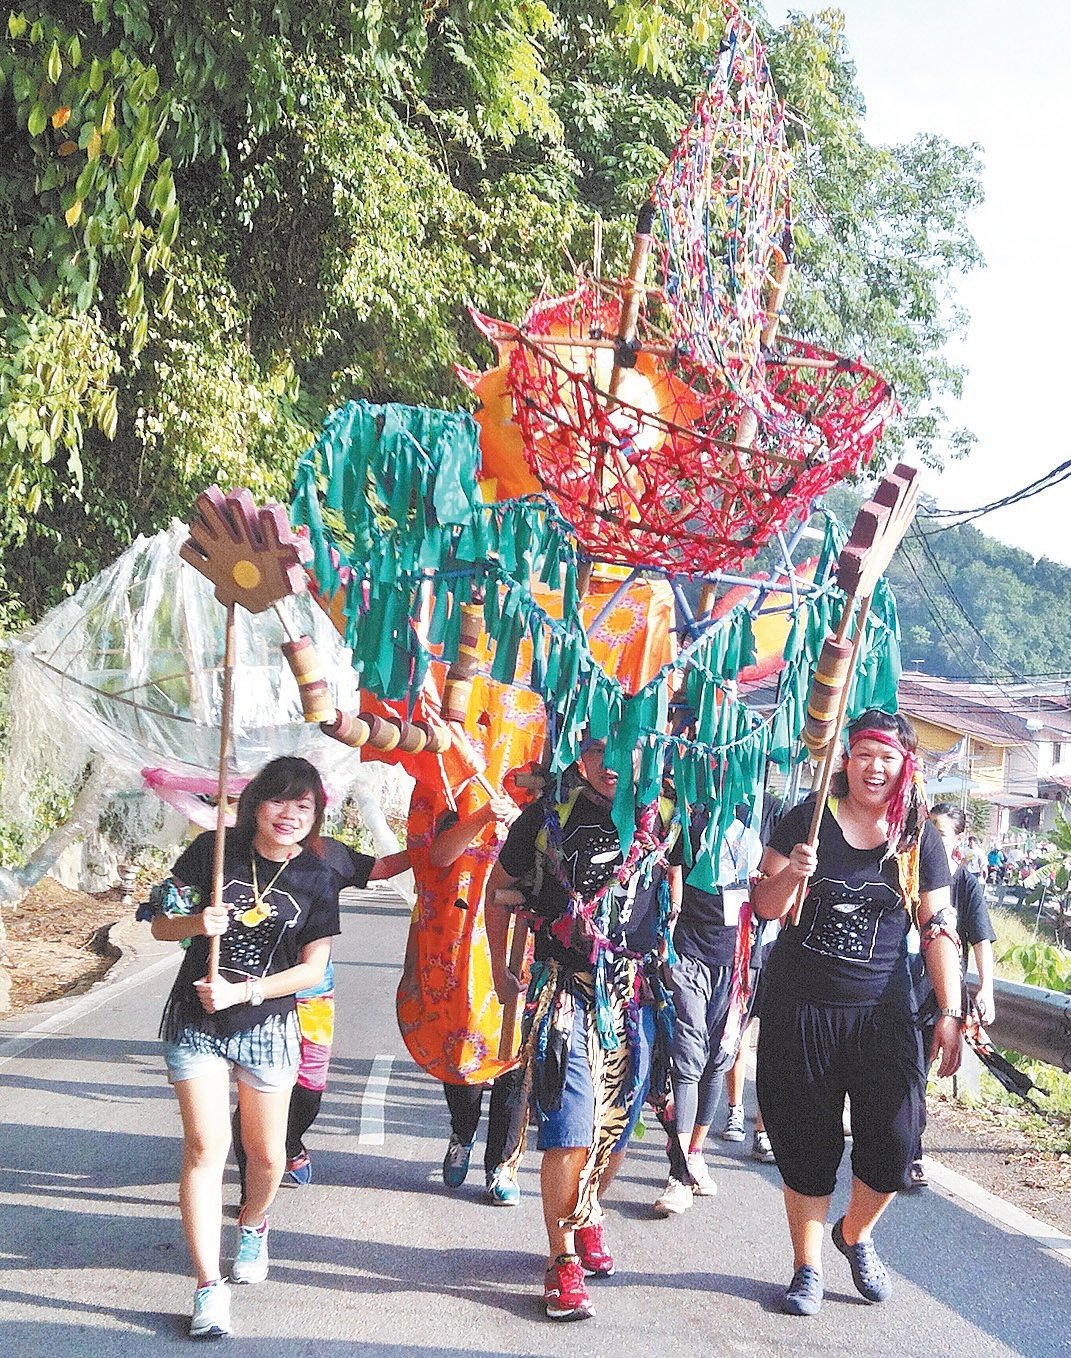 “邦咯海岛节”自2013年起成为邦咯岛的年度盛事，今年停办一届，明年续办。庄立康指，岛民从一开始抱持戒心，到后来下手帮忙，再到提出意见、参与策划，那是一个必经的过程。用3 年时间来创造一个新文化，其实并不算长，现时岛上有自己的舞鱼旗队，在马来西亚可说是独一无二。